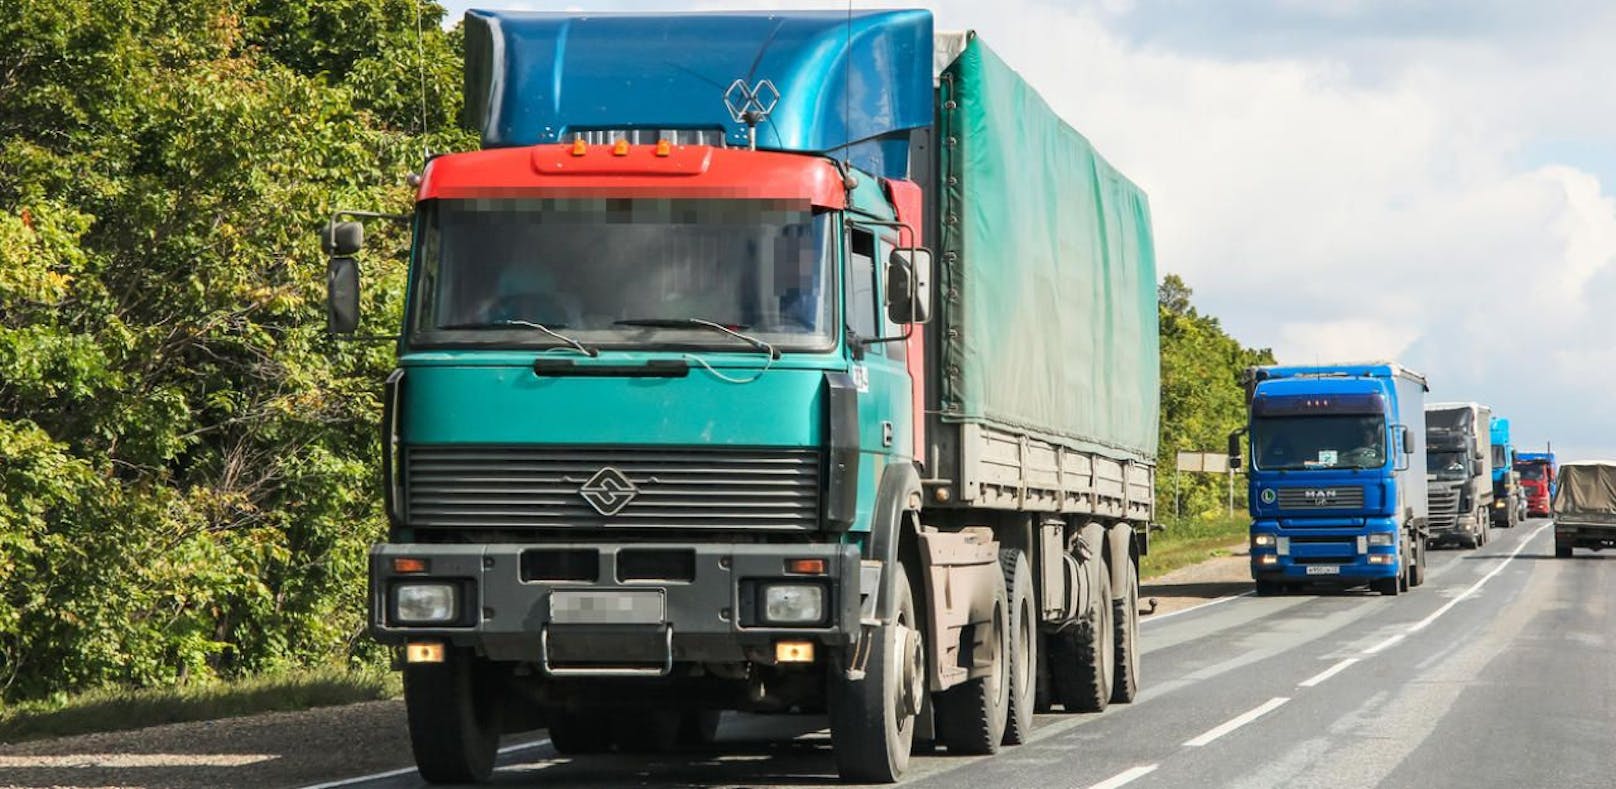 Symbolfoto eines Lastwagens.